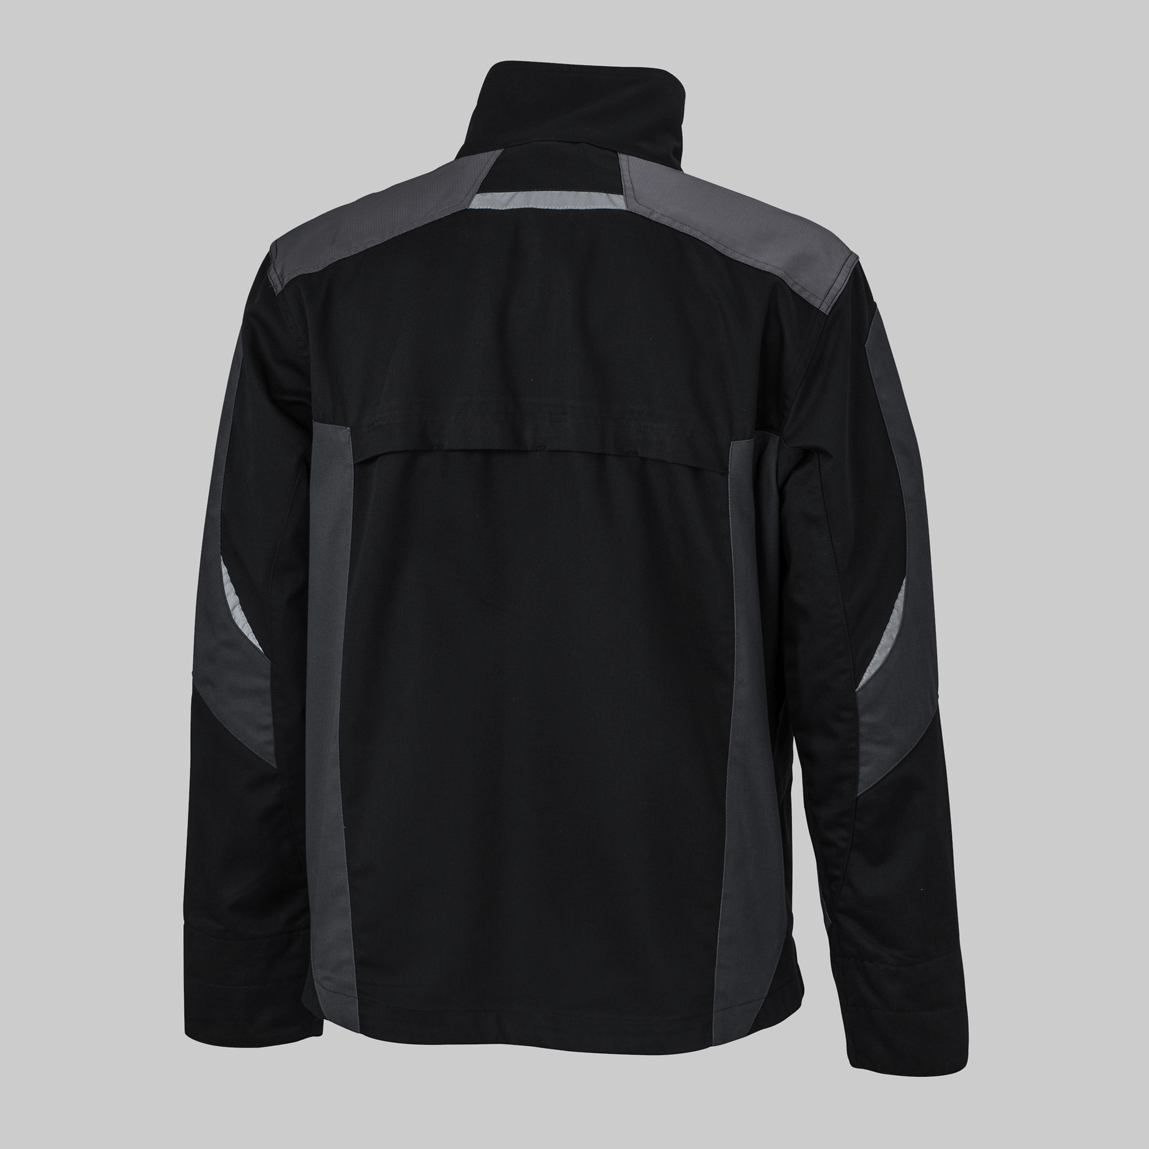 Rückseite einer schwarz-grauen Premium-Arbeitsjacke, Arbeitskleidung mit individueller Stickerei